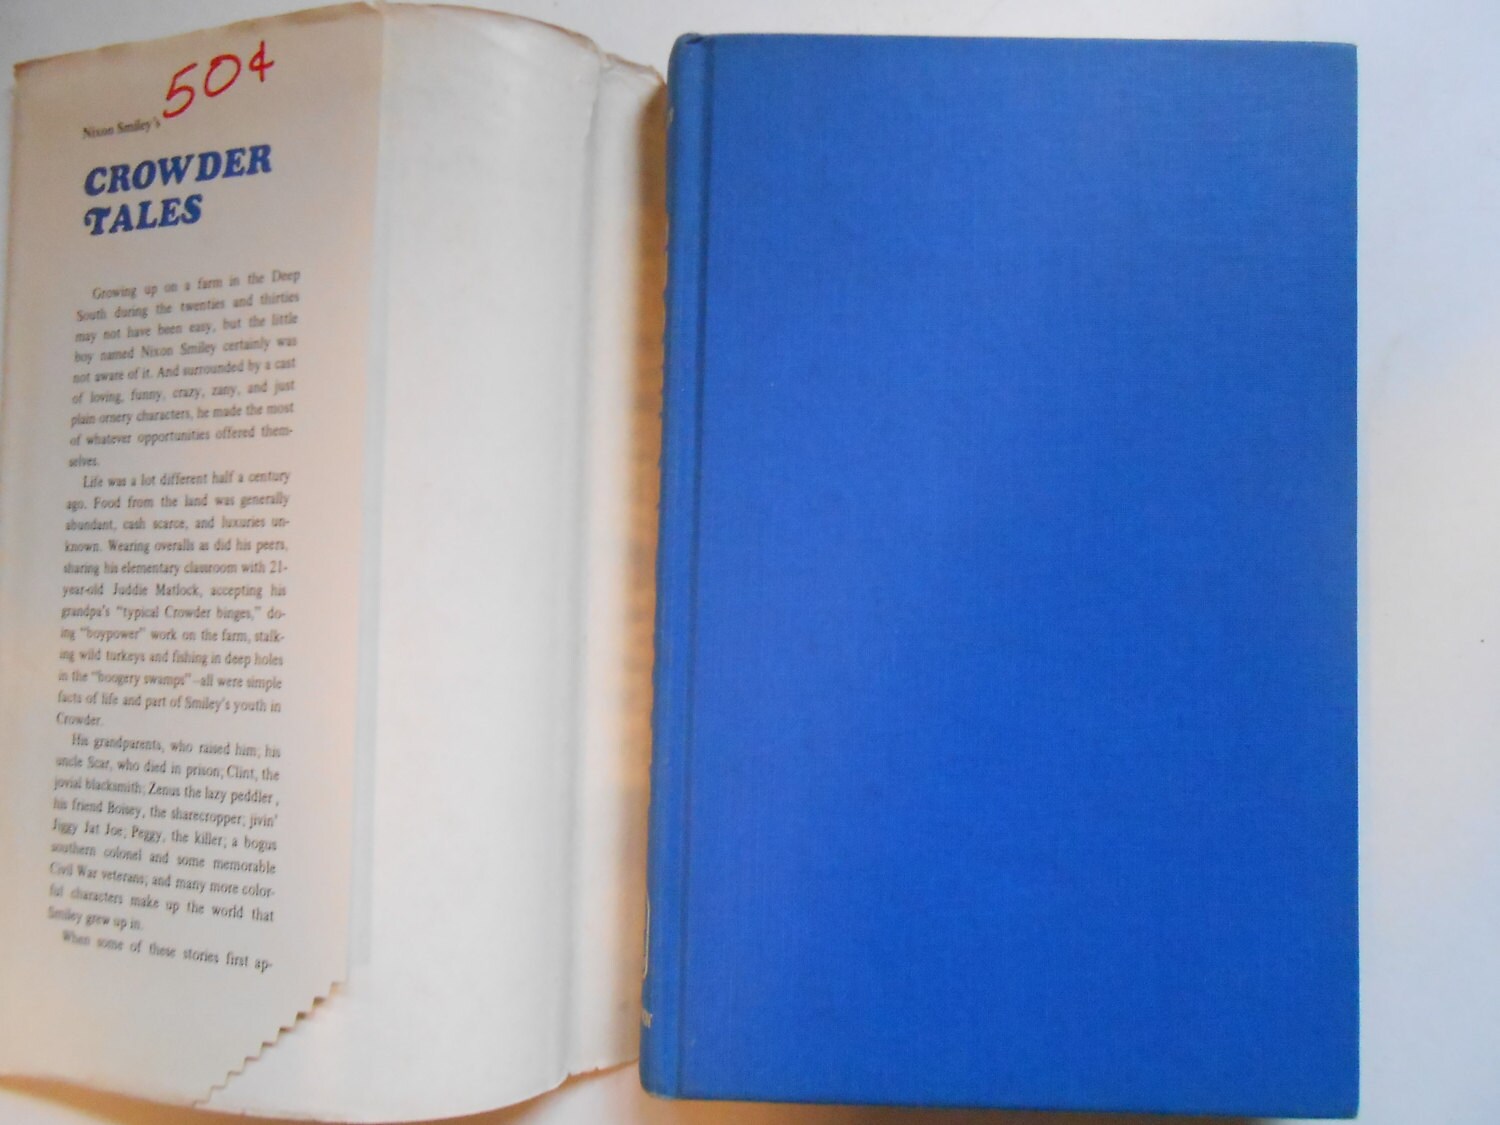 Nixon Smiley's Crowder Tales, a Vintage Book - Etsy